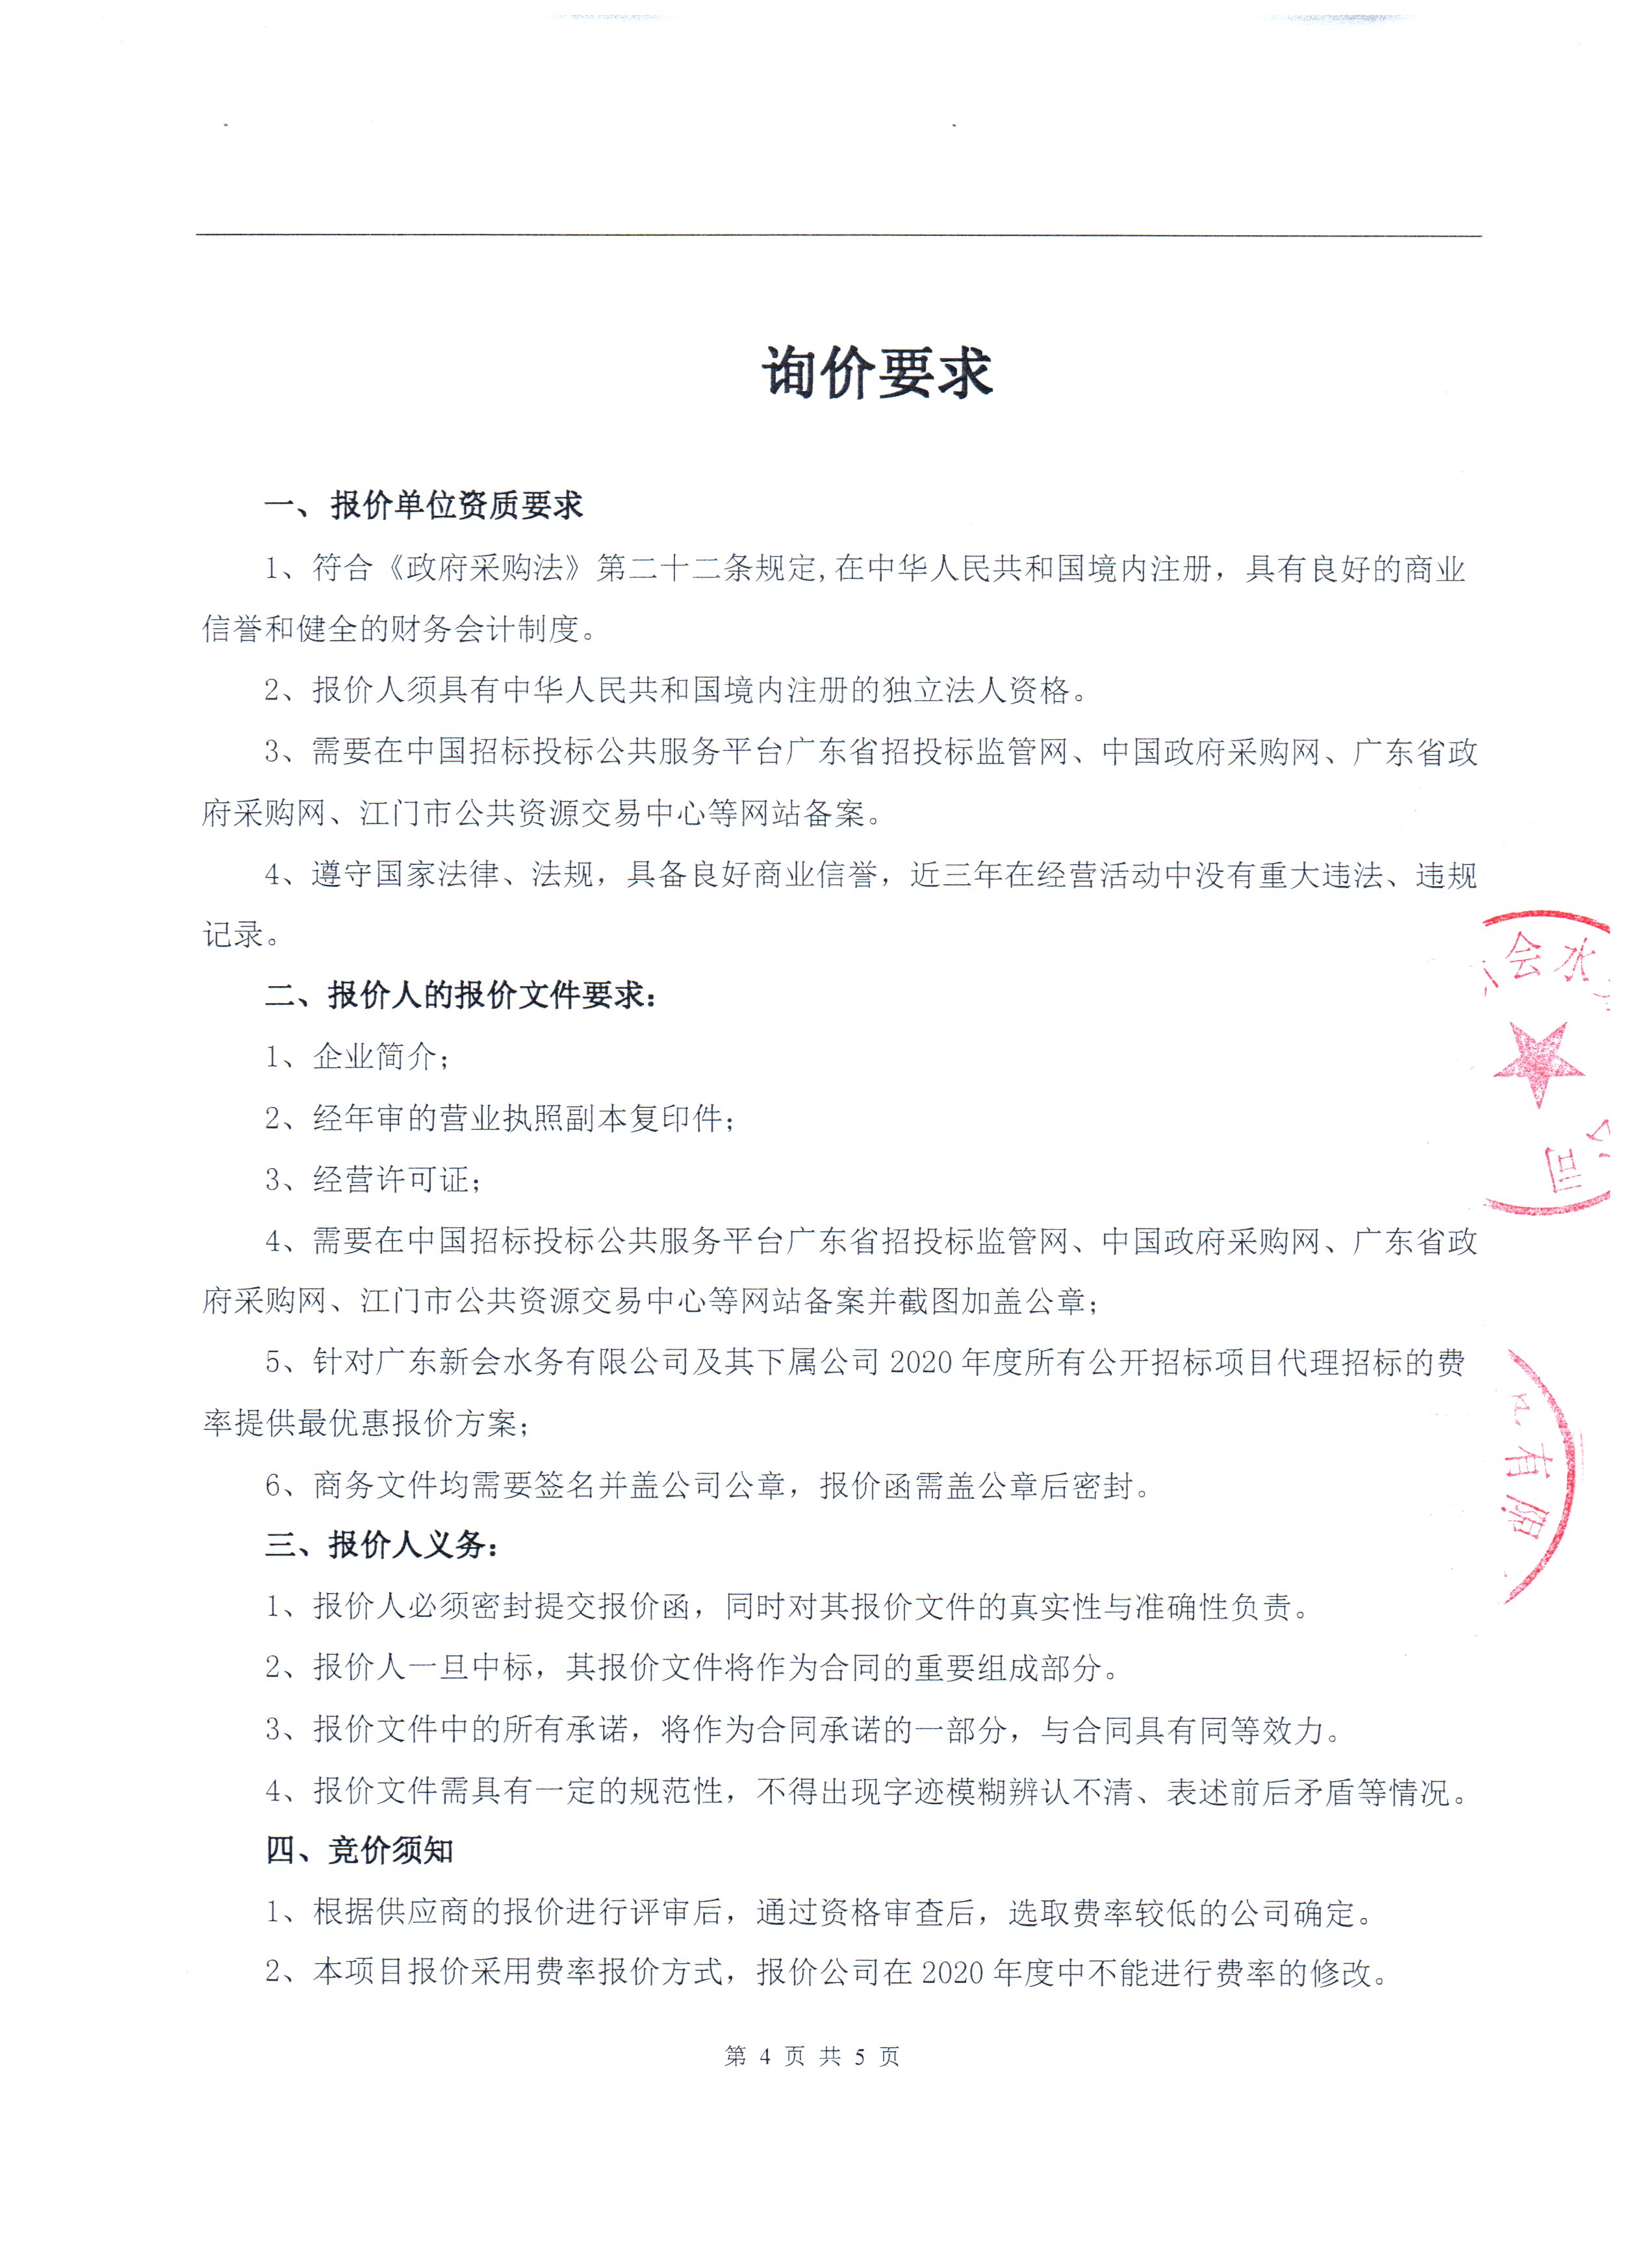 关于广东新会水务公司及其下属公司招标代理供应商候选名单确定项目的公告图4.jpg